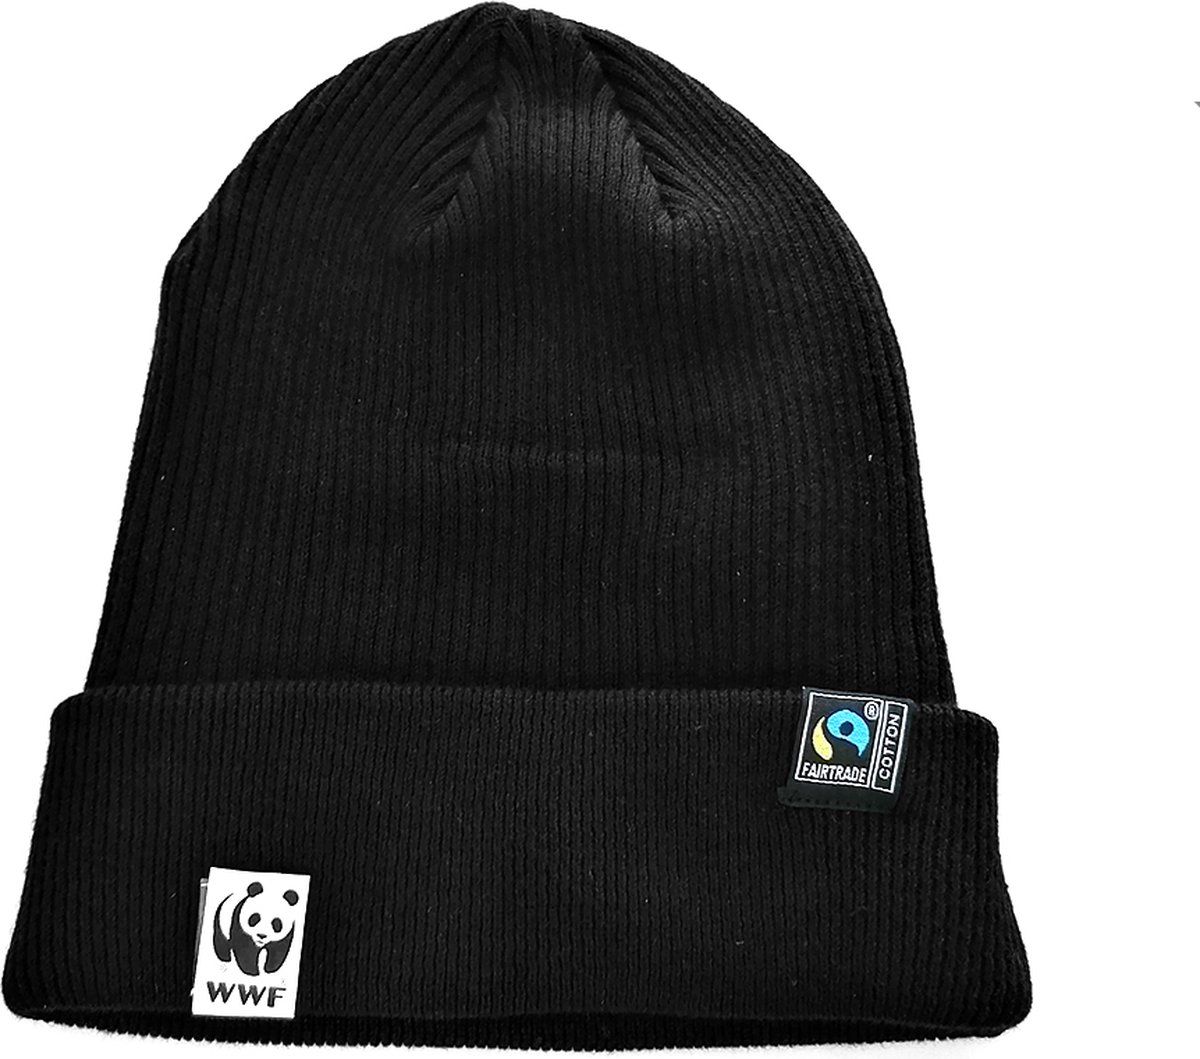 WWF beanie muts - zwart - panda logo